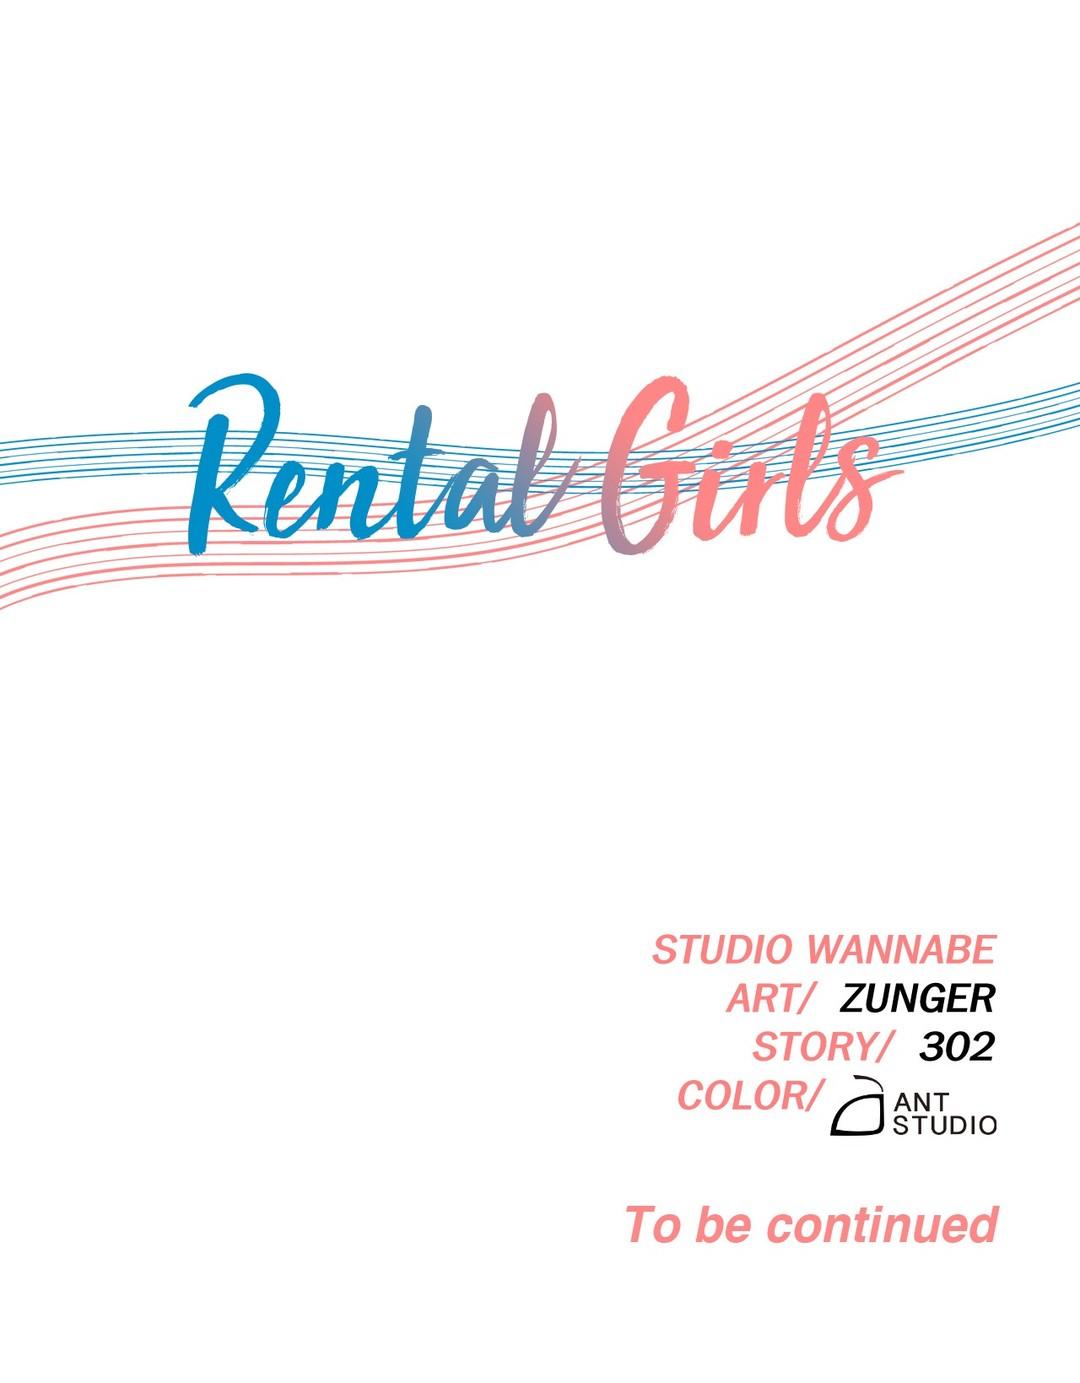 Rental Girls Ch 17 -19 34